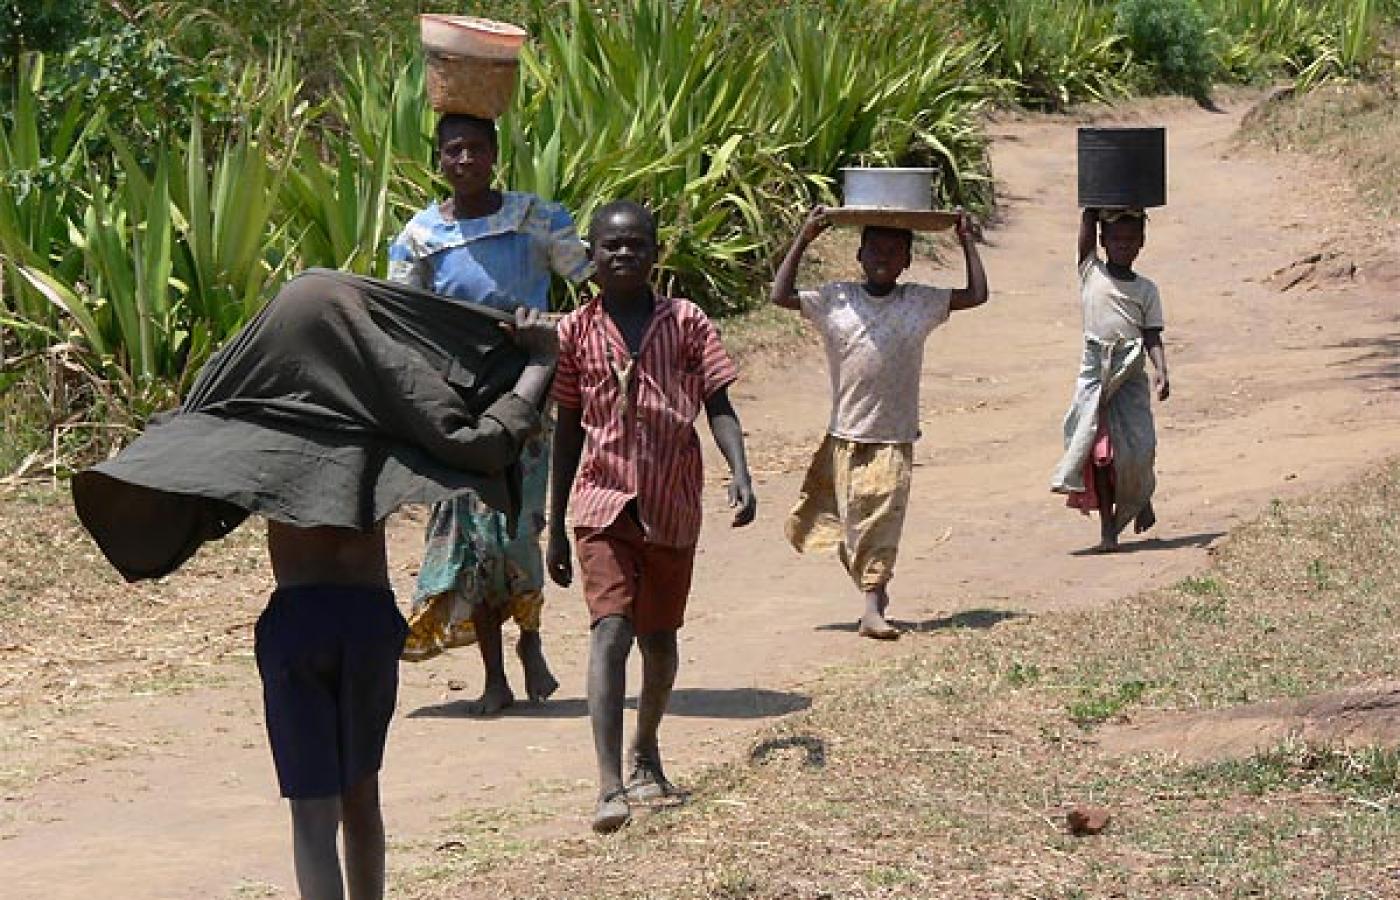 Demografowie są szczególnie zmartwieni stopą wzrostu liczby afrykańskiej ludności (na zdjęciu - dzieci z Malawi), która jest wyższa niż w jakimkolwiek innym regionie świata w ostatnich dekadach. Fot. Larsz, Flickr (CC BY SA)